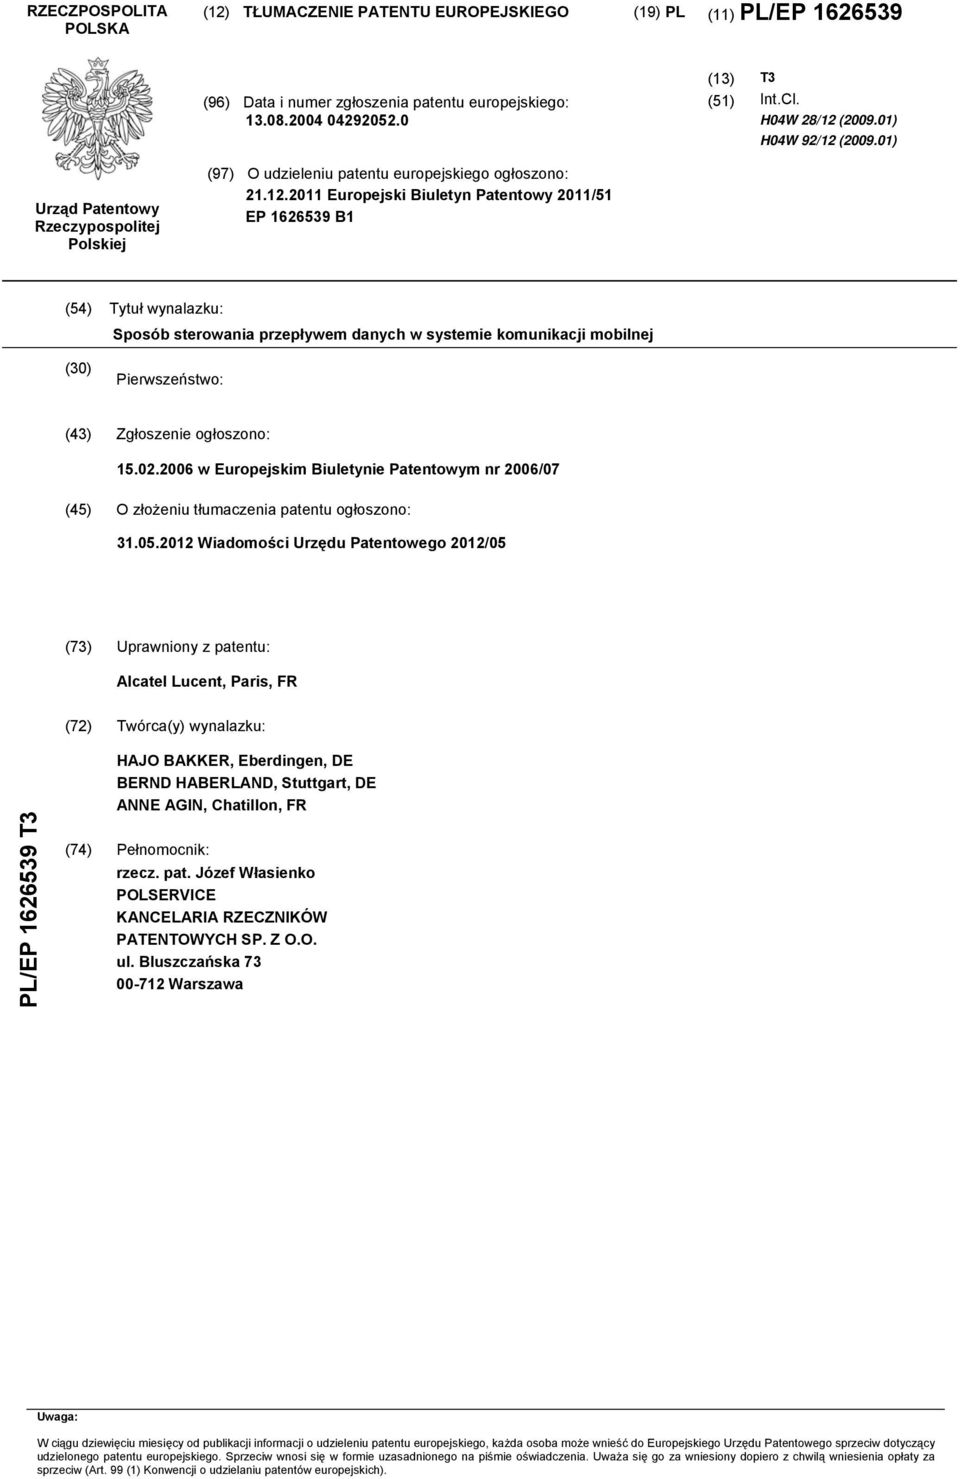 02.06 w Europejskim Biuletynie Patentowym nr 06/07 (4) O złożeniu tłumaczenia patentu ogłoszono: 31.0.12 Wiadomości Urzędu Patentowego 12/0 (73) Uprawniony z patentu: Alcatel Lucent, Paris, FR (72)